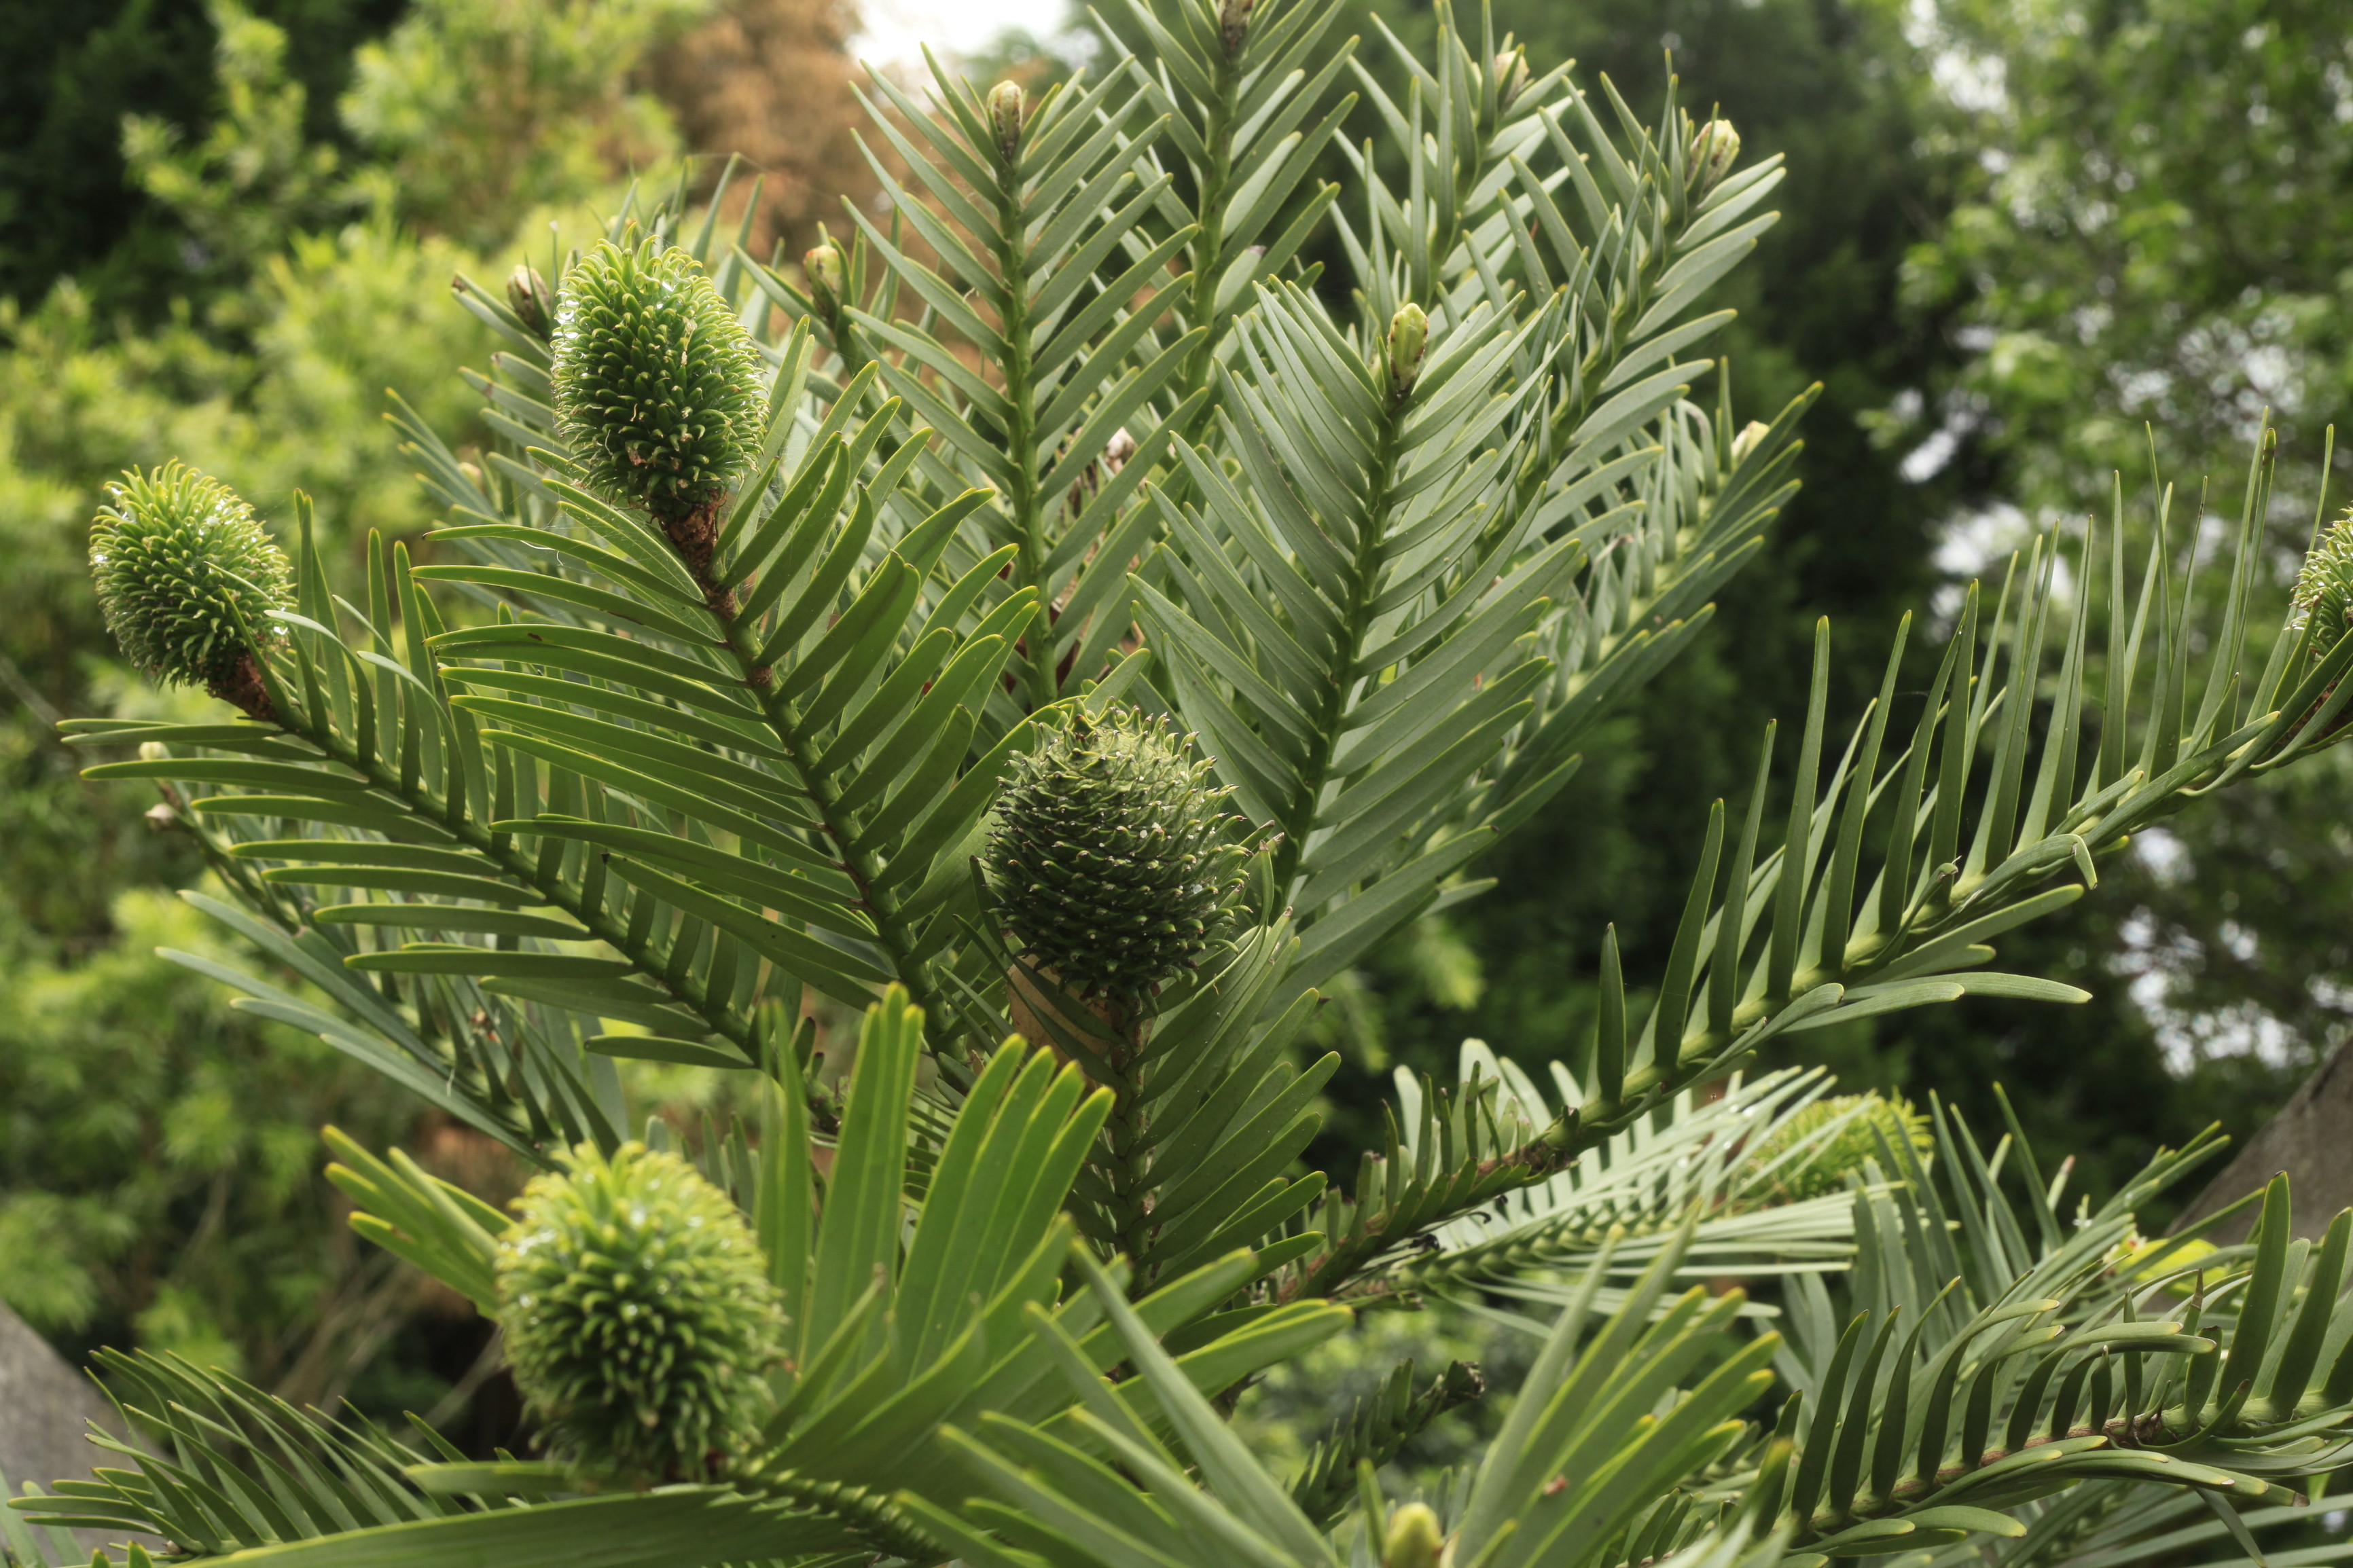 Wollemi Pine – an Australian botanical icon. Photo: Rosie Nicolai/DPIE